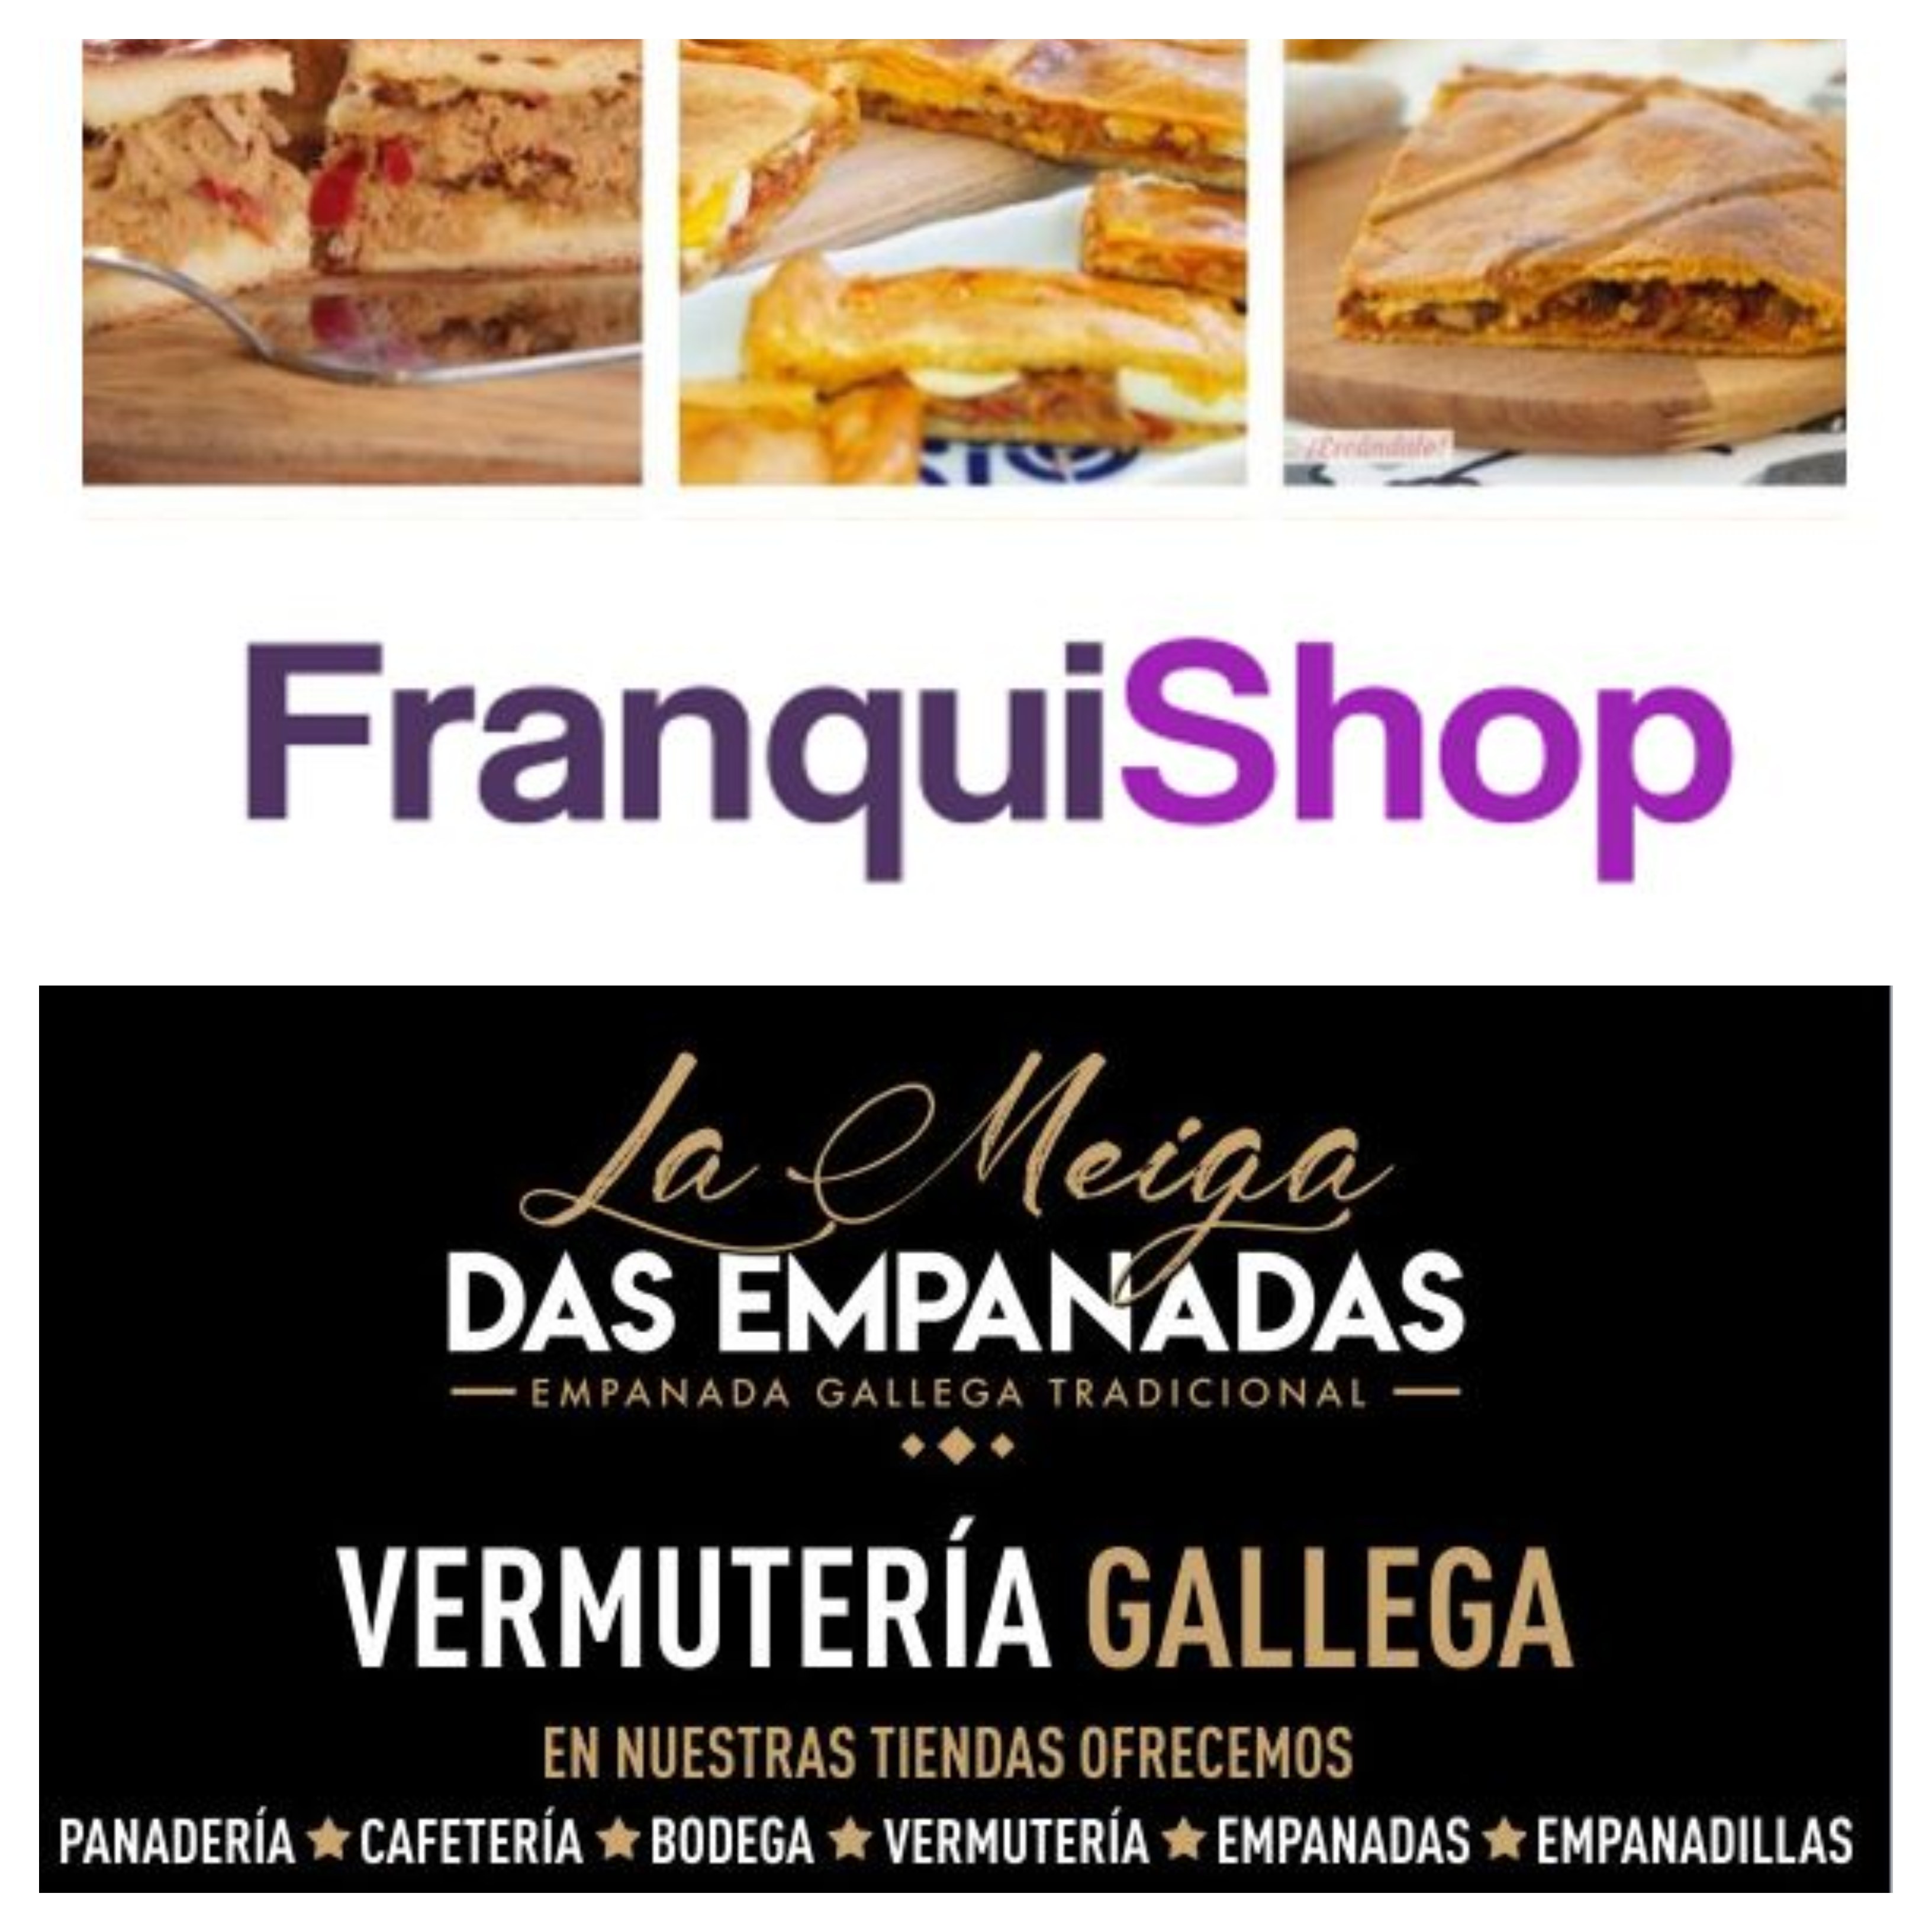 La Meiga Das Empanadas muestra su modelo de negocio en Franquishop Barcelona